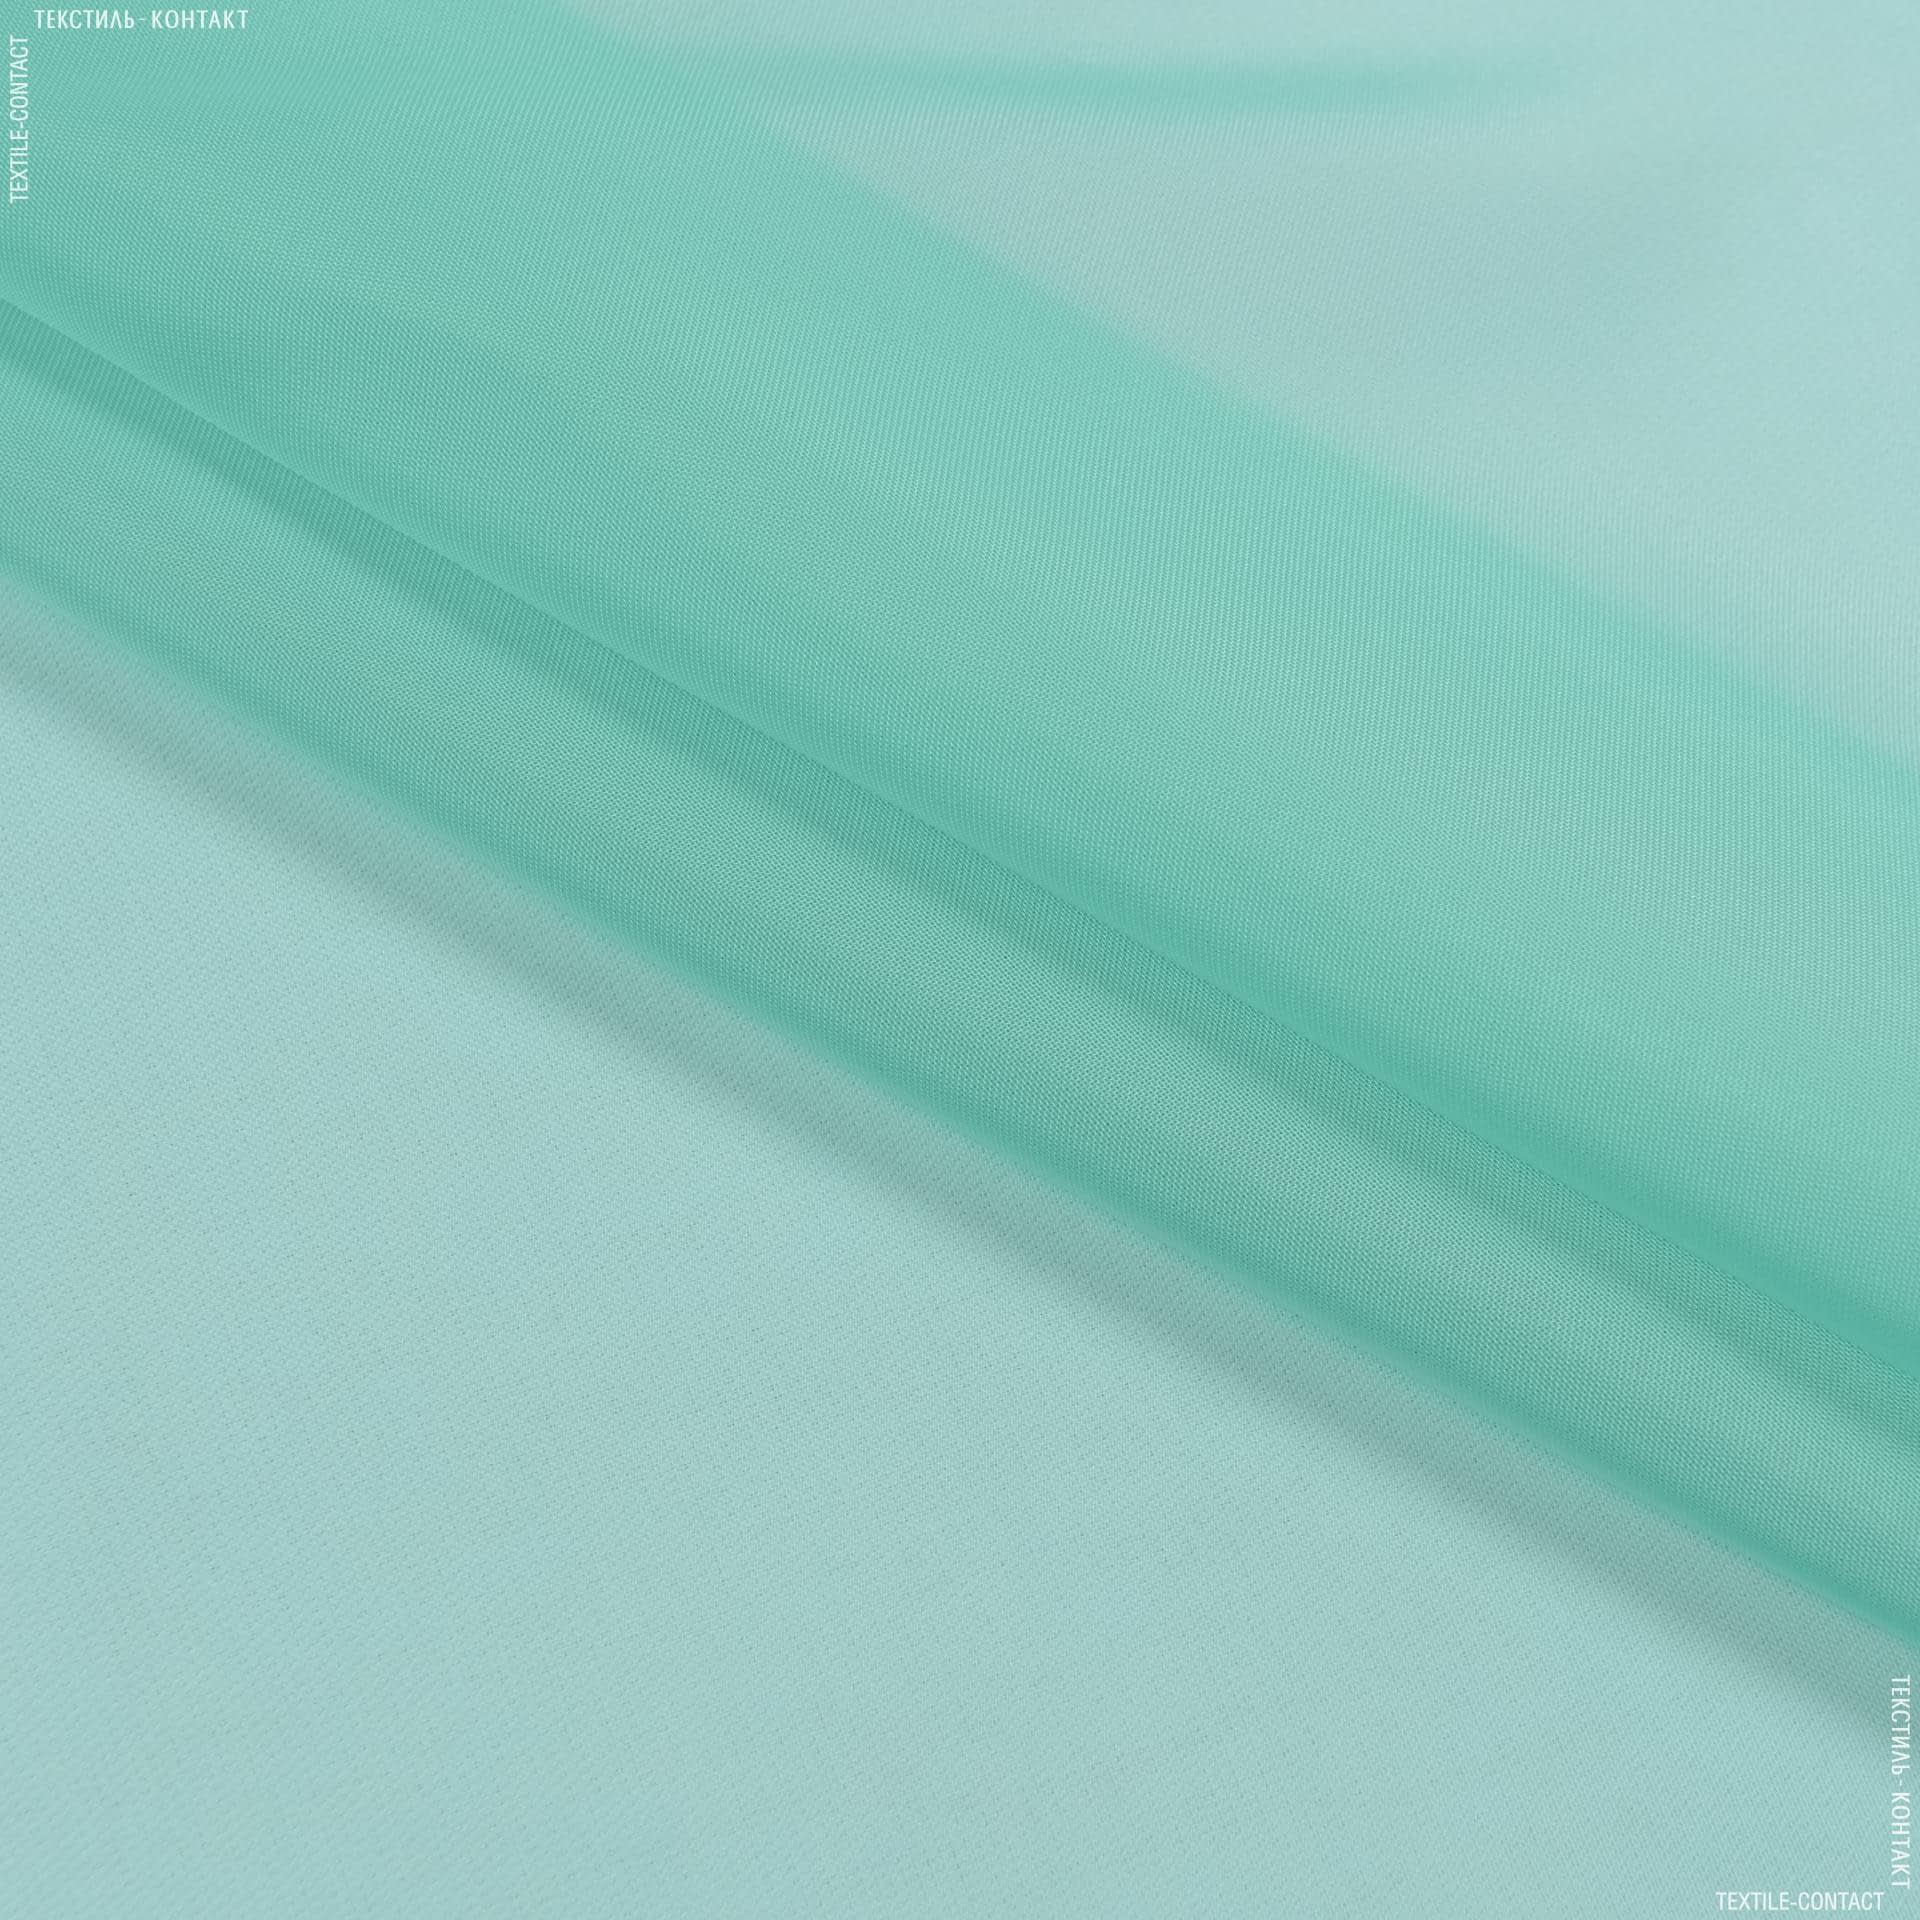 Тканини гардинні тканини - Тюль вуаль зелена бірюза